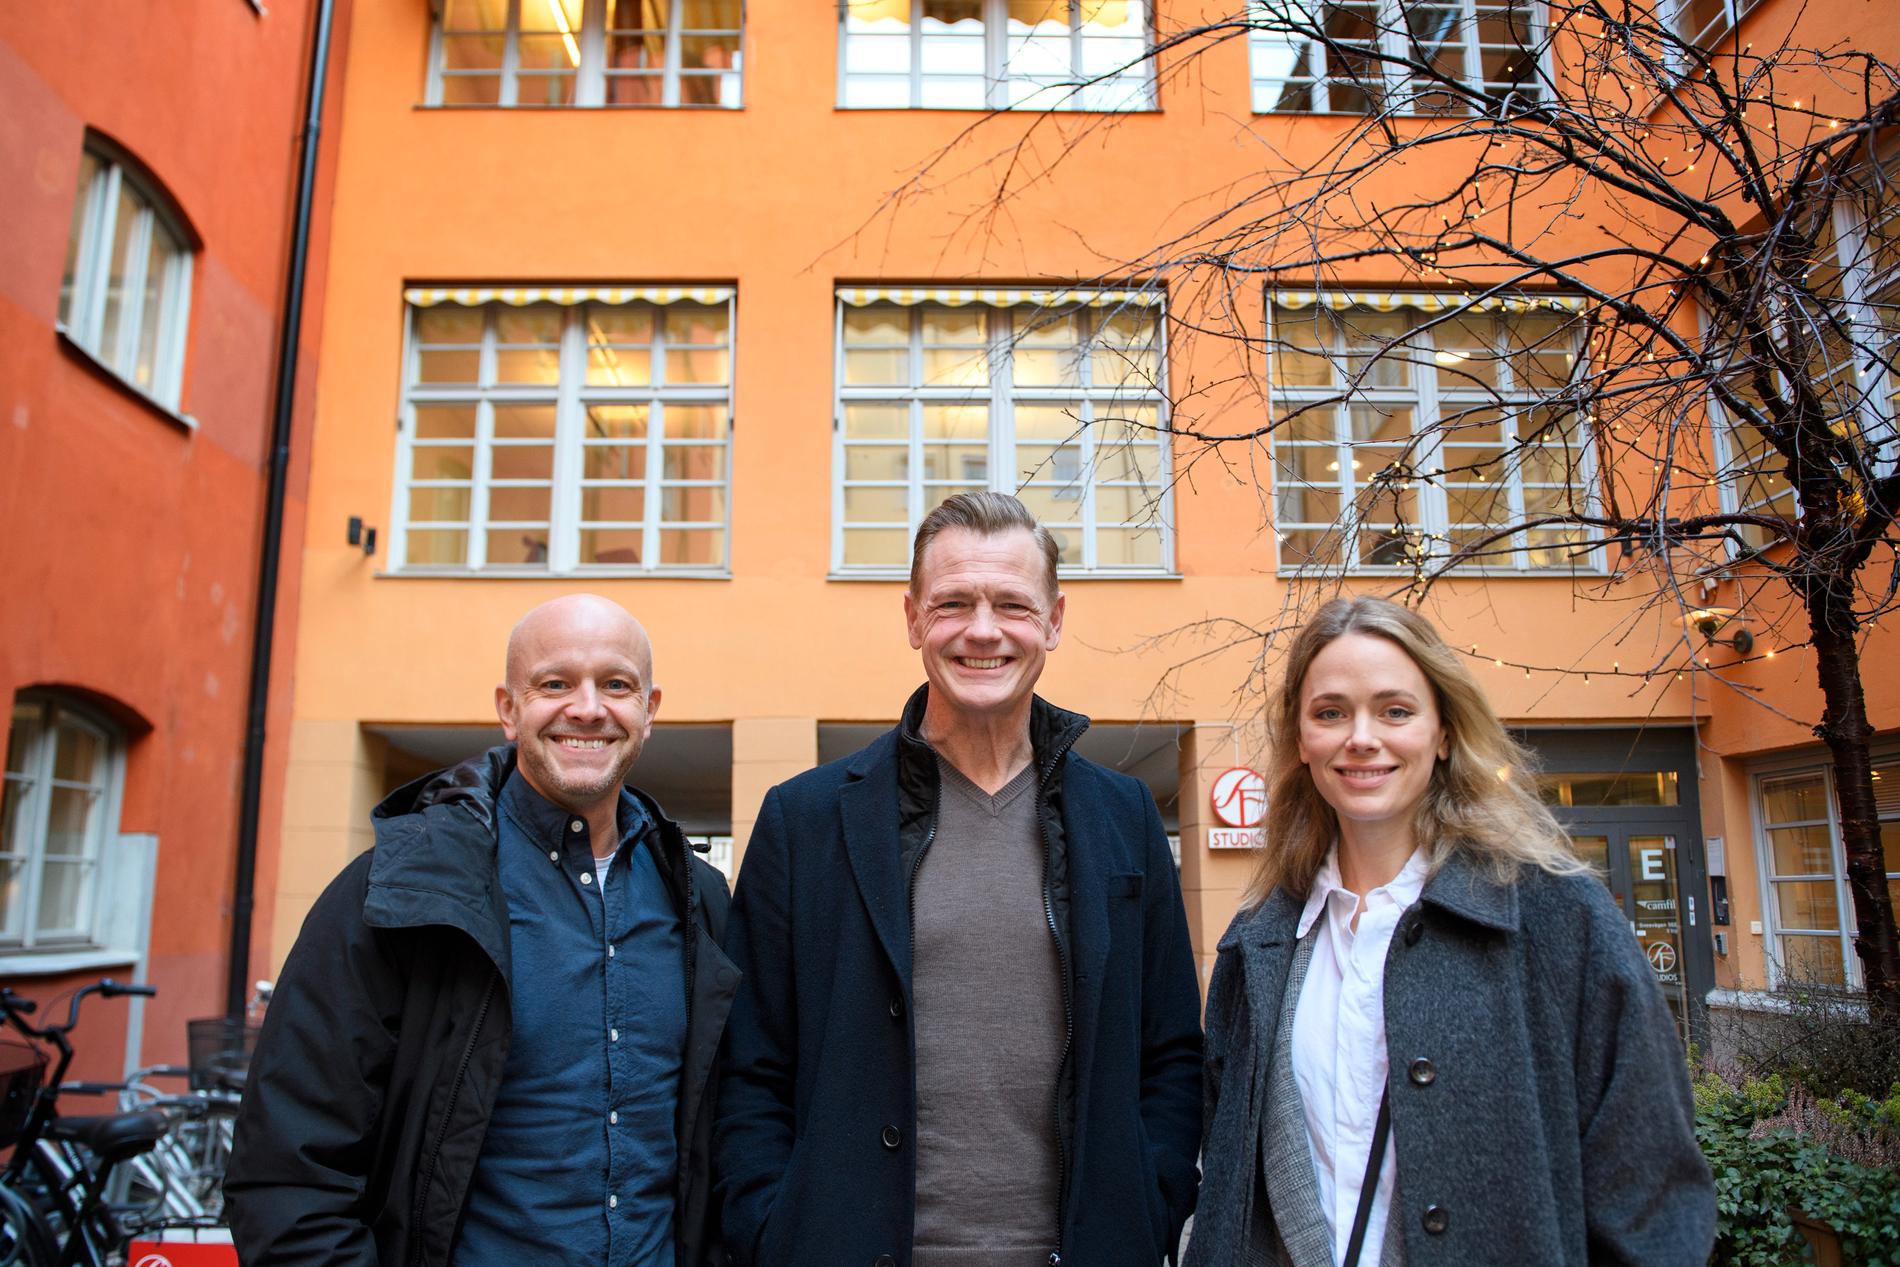 Skådespelarna Fredrik Hallgren, Katia Winter och regissören Mårten Klingberg (mitten) ser fram emot att äntligen få premiär på sin pandemiuppskjutna komedi "Ur spår".